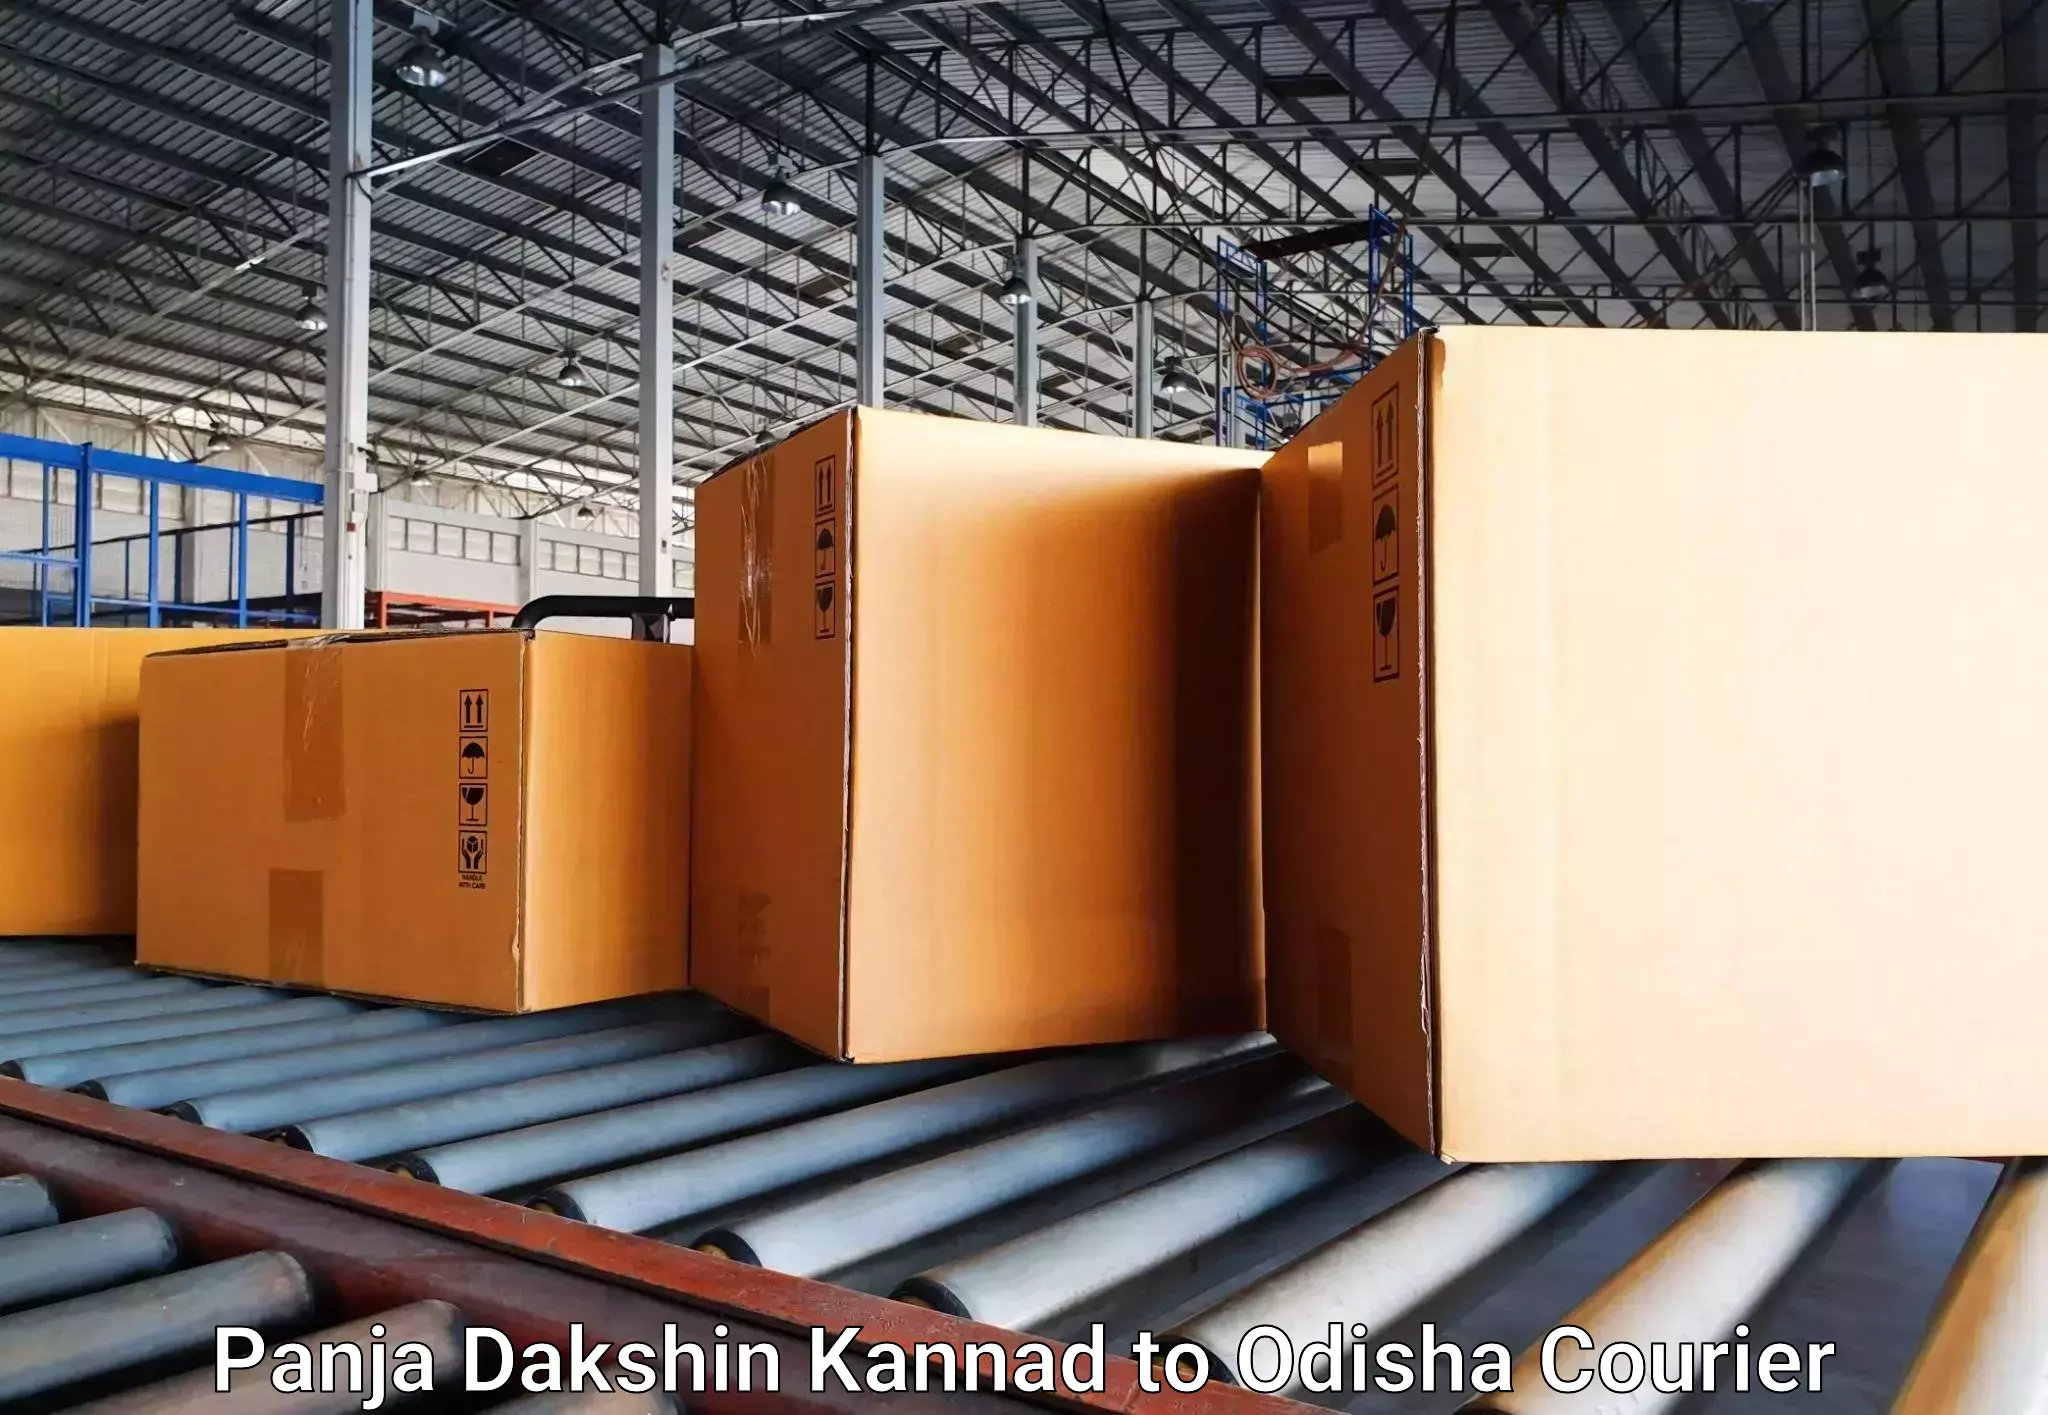 Baggage transport services Panja Dakshin Kannad to Mathili